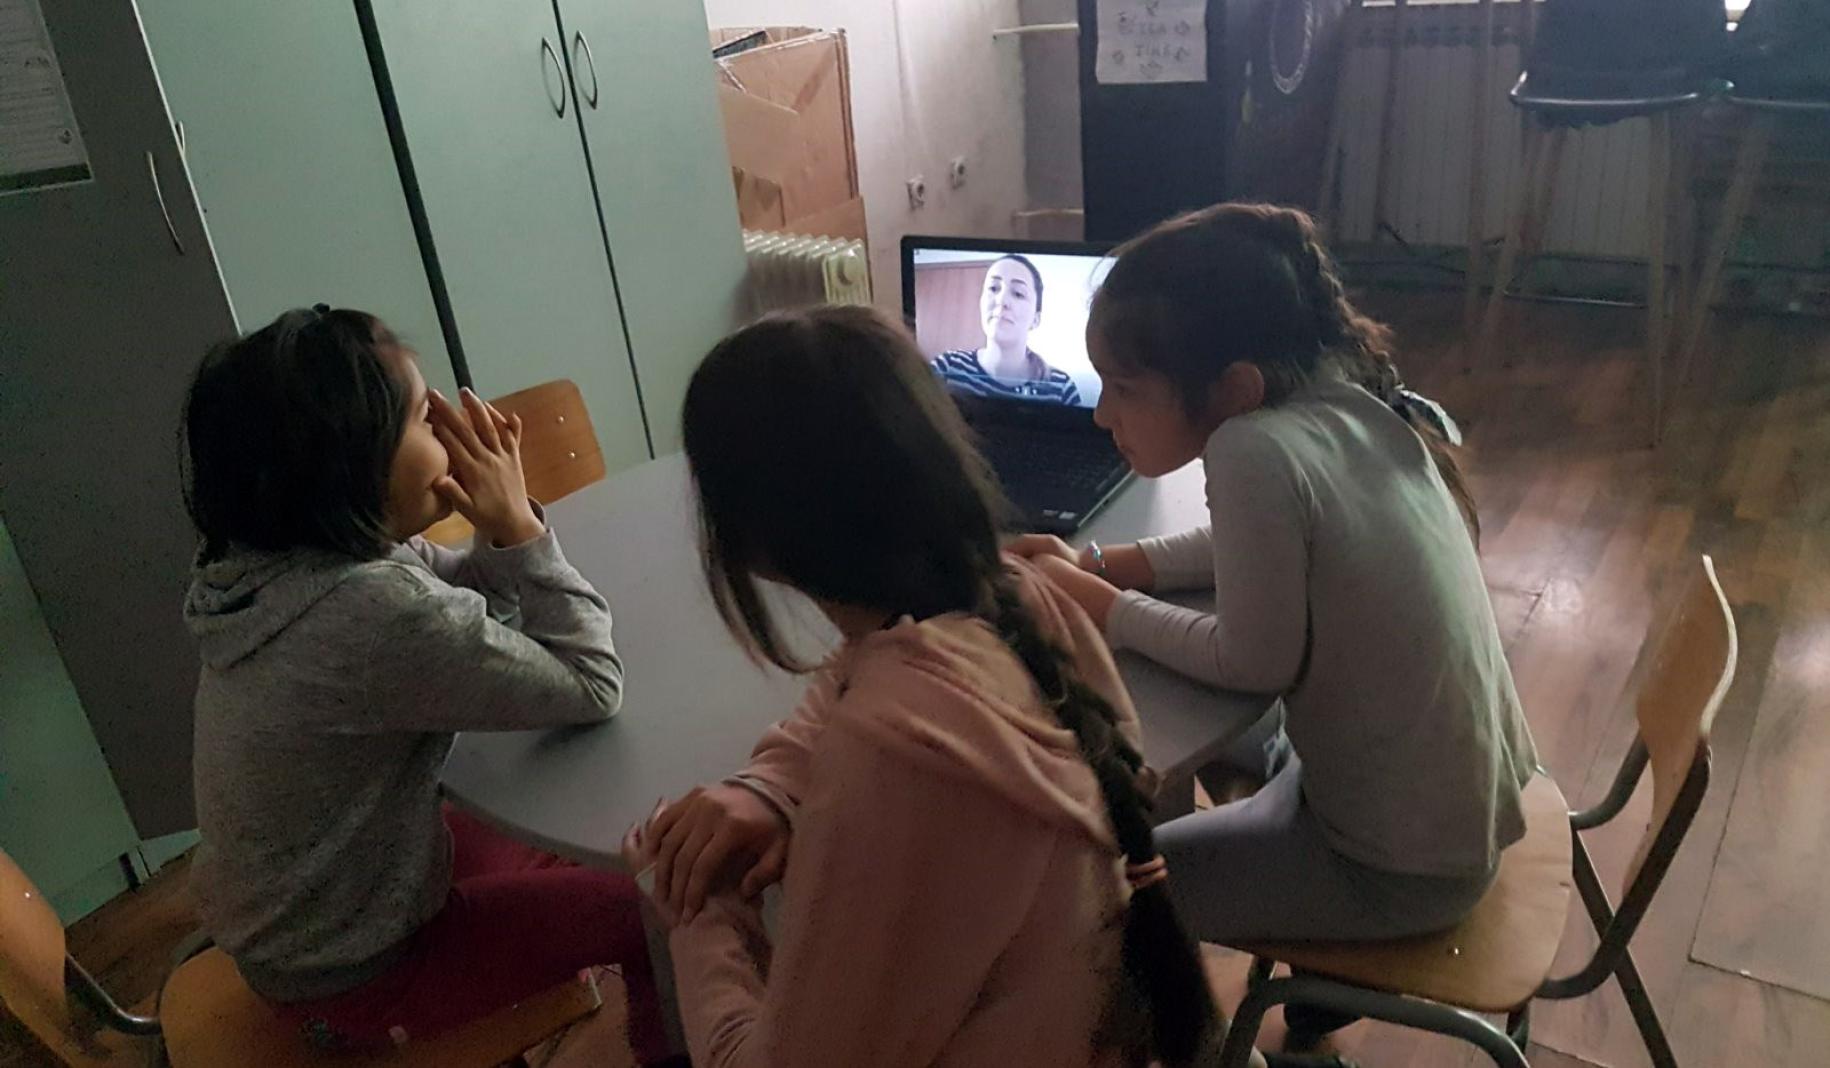 Tres estudiantes jóvenes participan en una clase en línea.